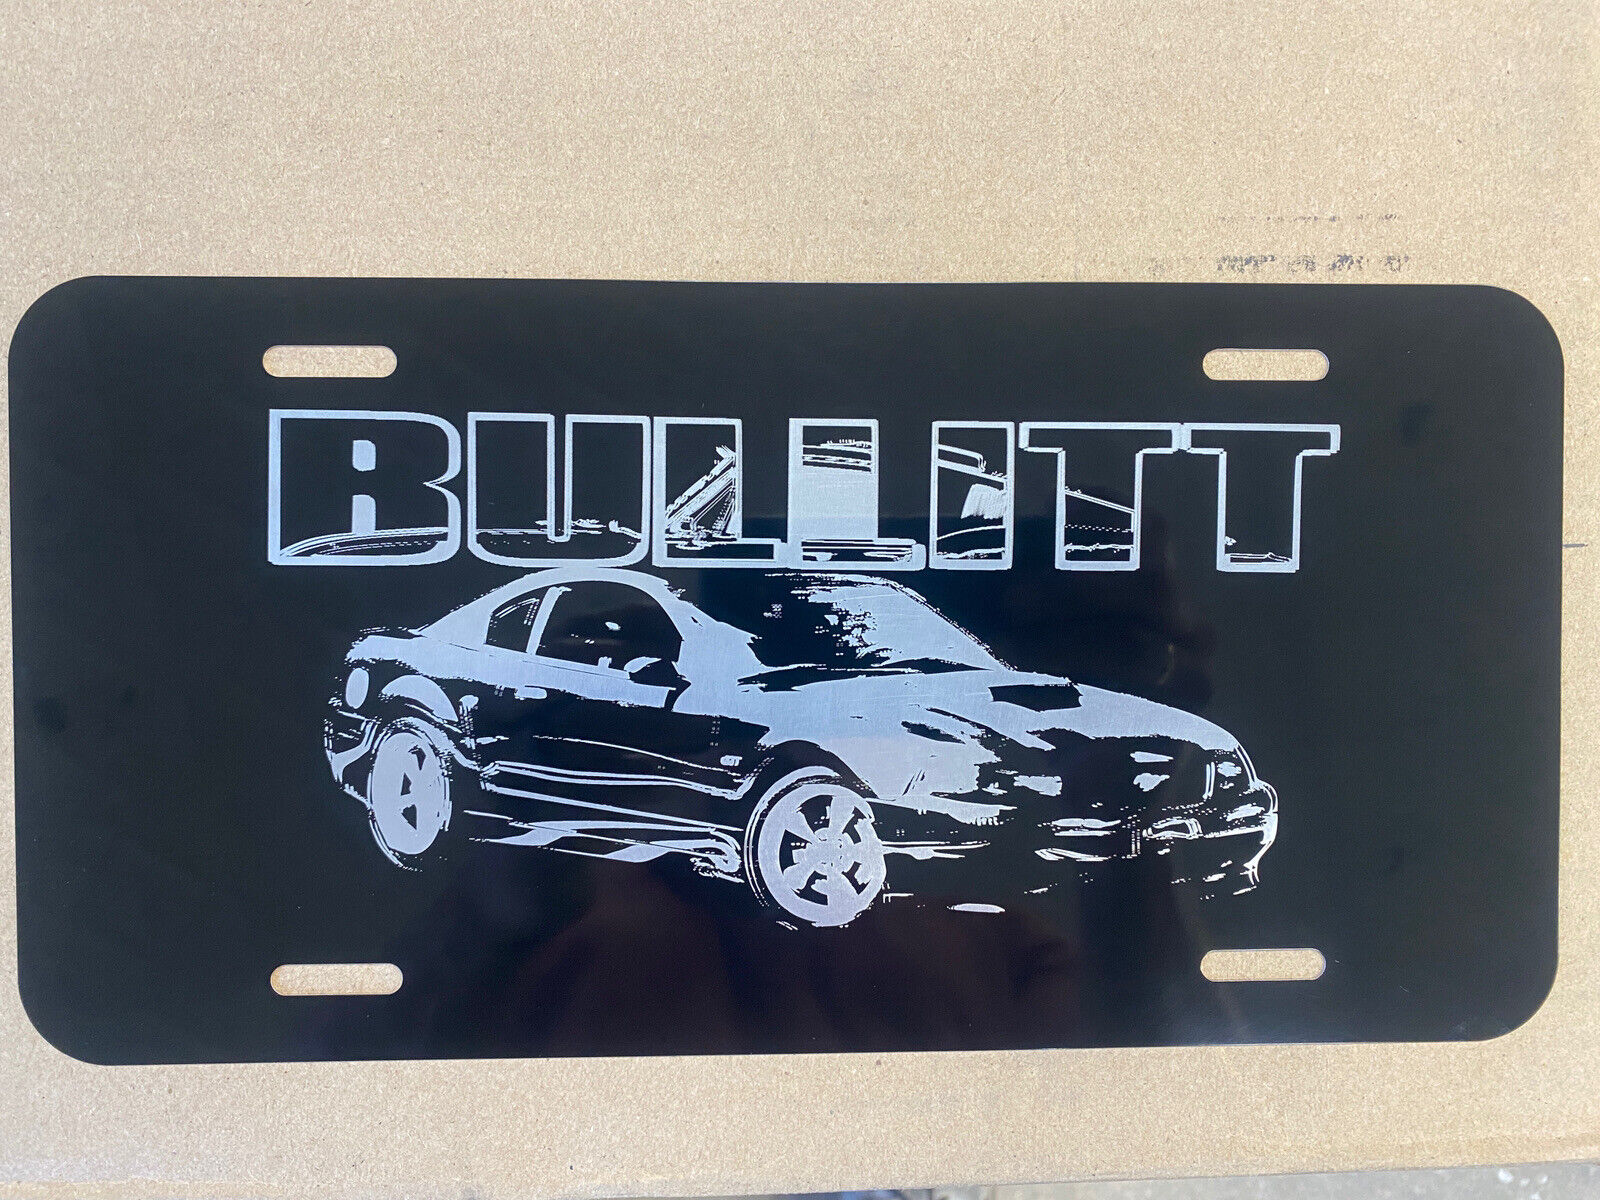 2001 Mustang GT Bullitt Novelty License Plate